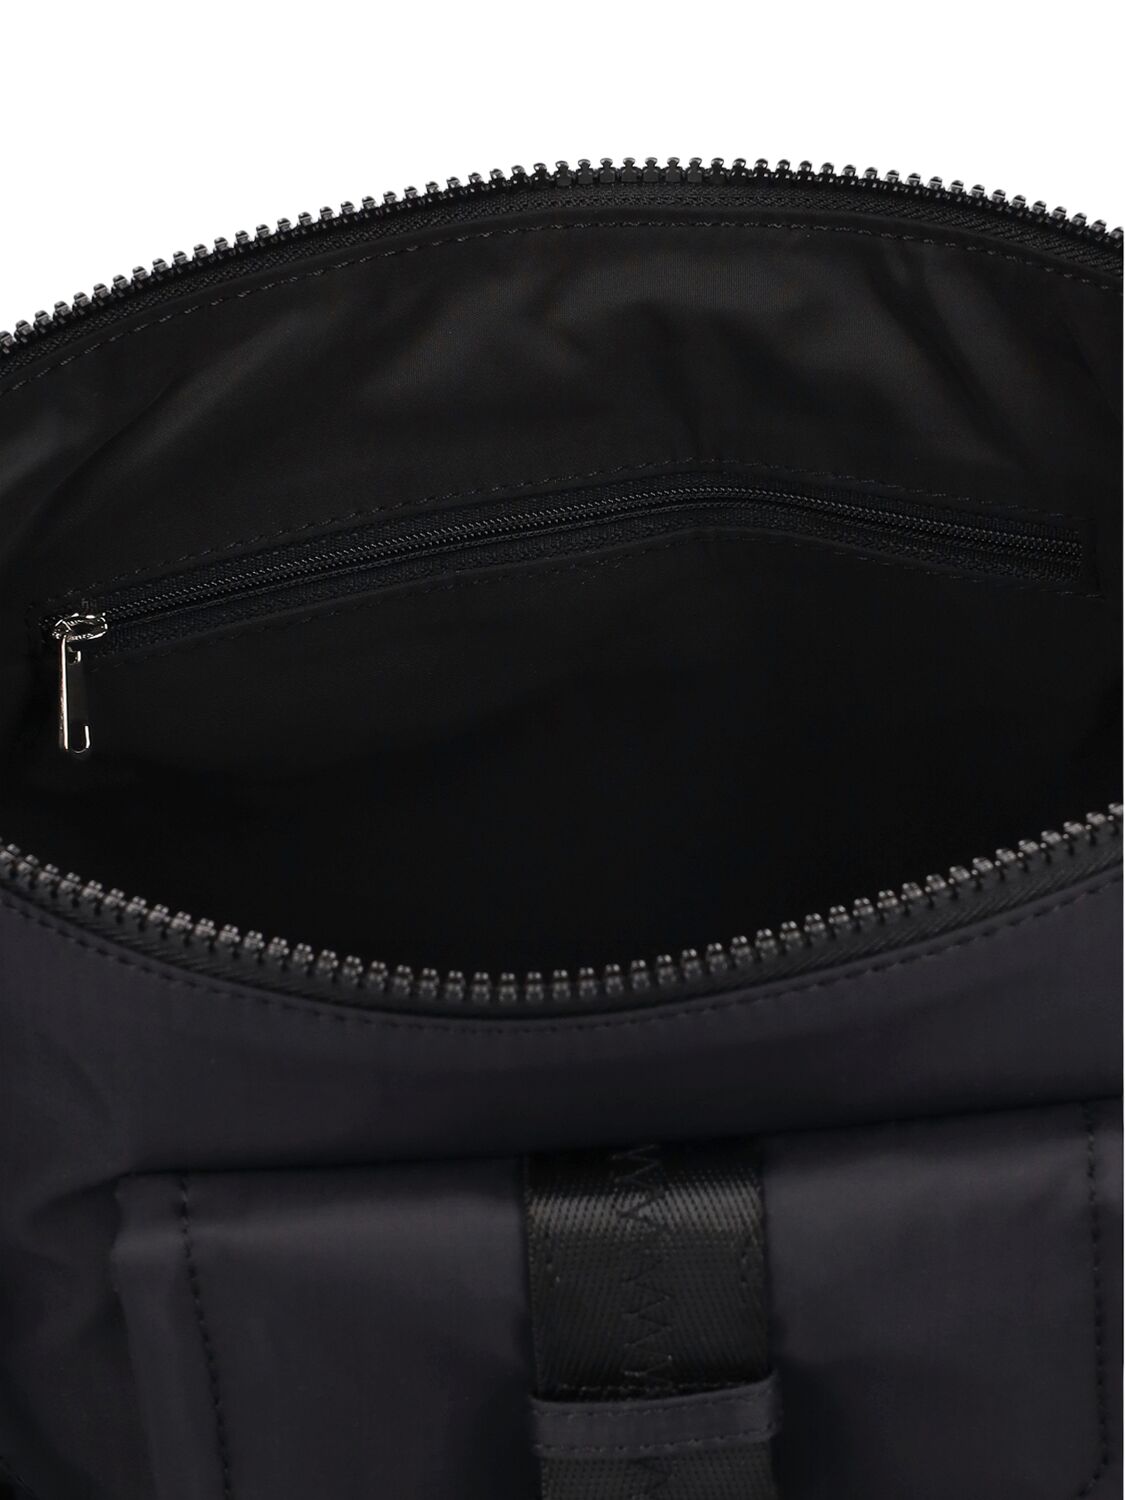 Shop Apc Nylon Crossbody Bag In Black